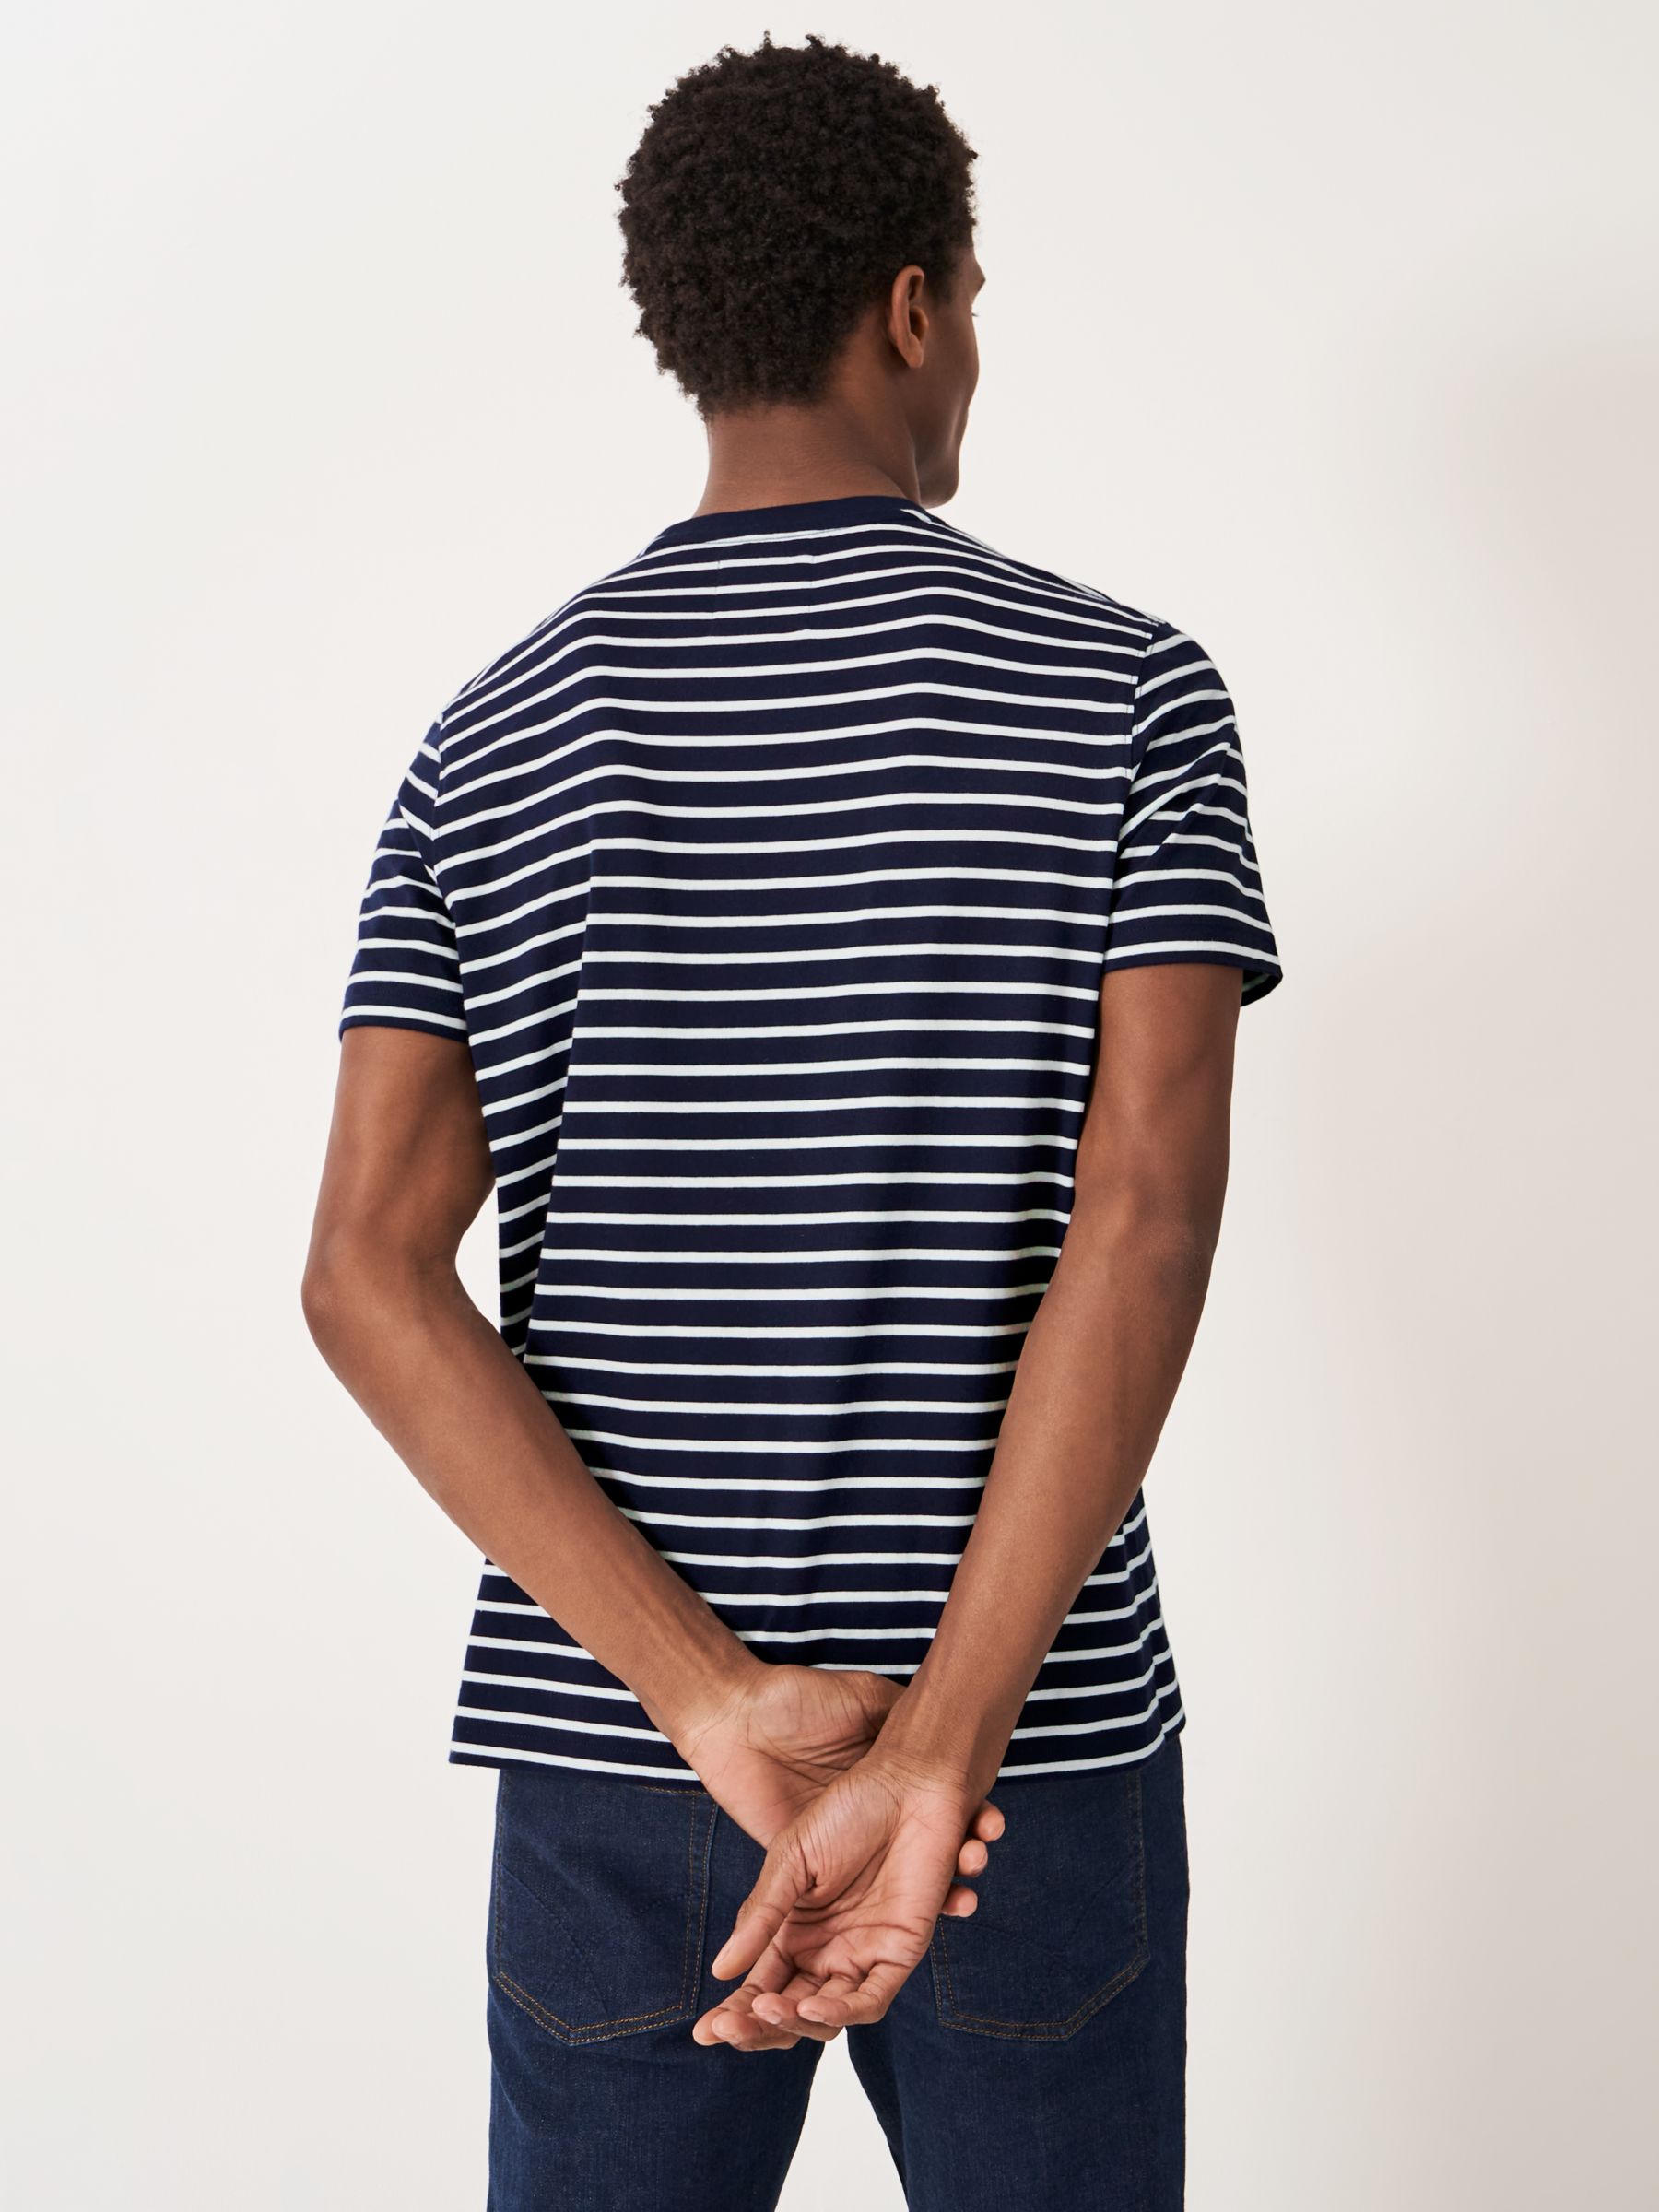 Crew Clothing Breton Stripe Cotton T-Shirt, Navy/White, XS